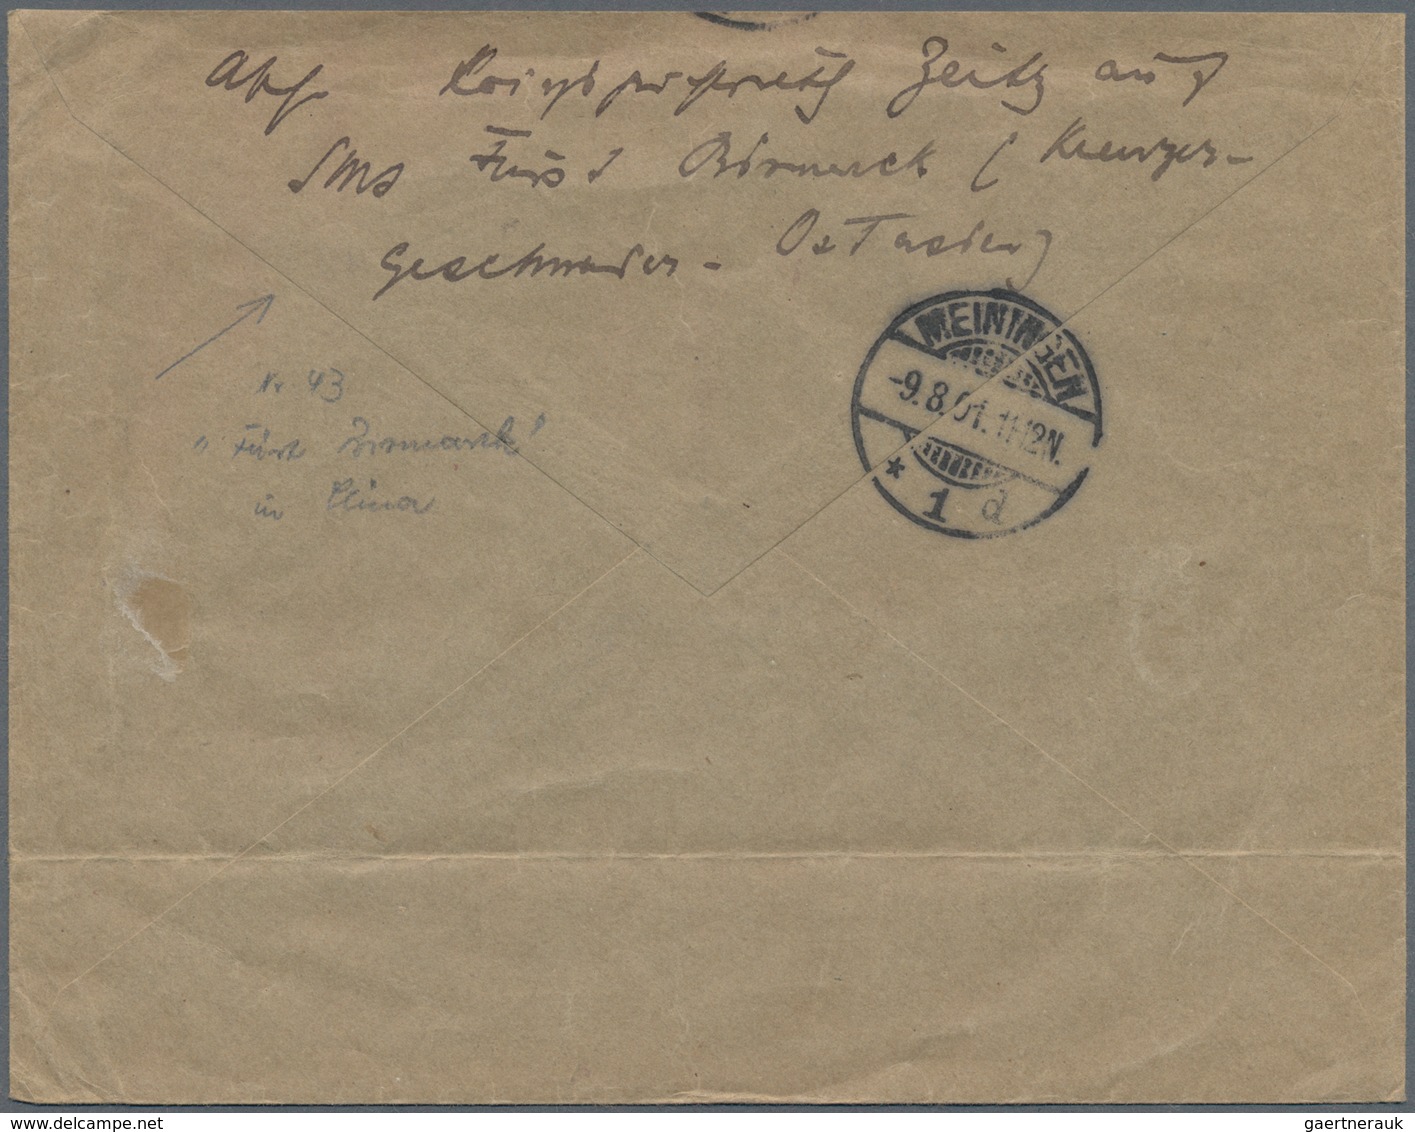 Deutsche Schiffspost - Marine: 1900/01, MSP No. 4 (Irene) auf jap. UPU Karte n. Winzig, MSP No. 43 (